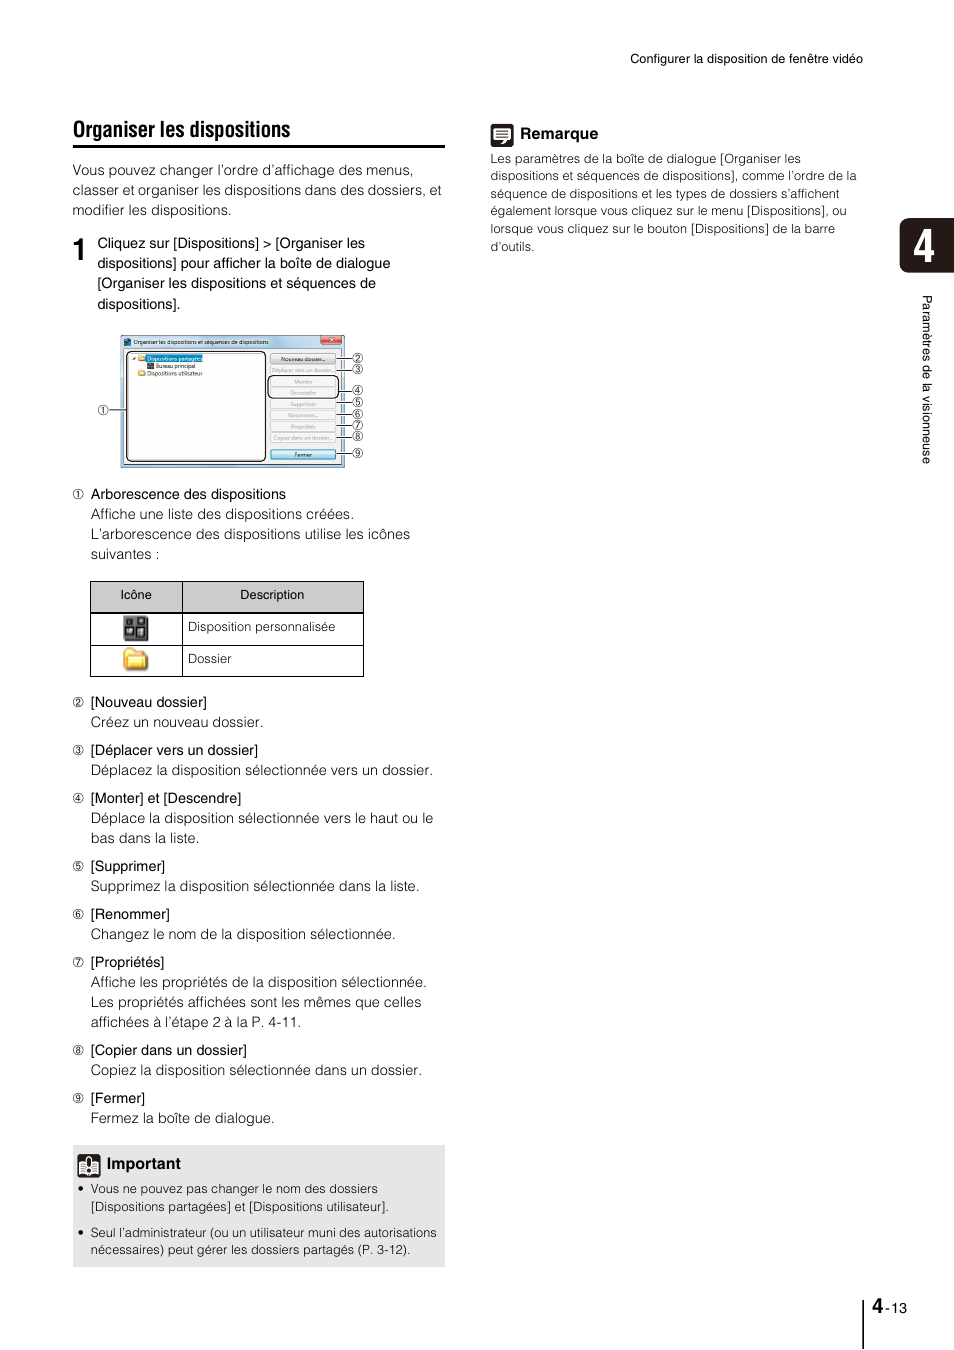 Organiser les dispositions, Organiser les dispositions -13 | Canon RM-Software Manuel d'utilisation | Page 55 / 104